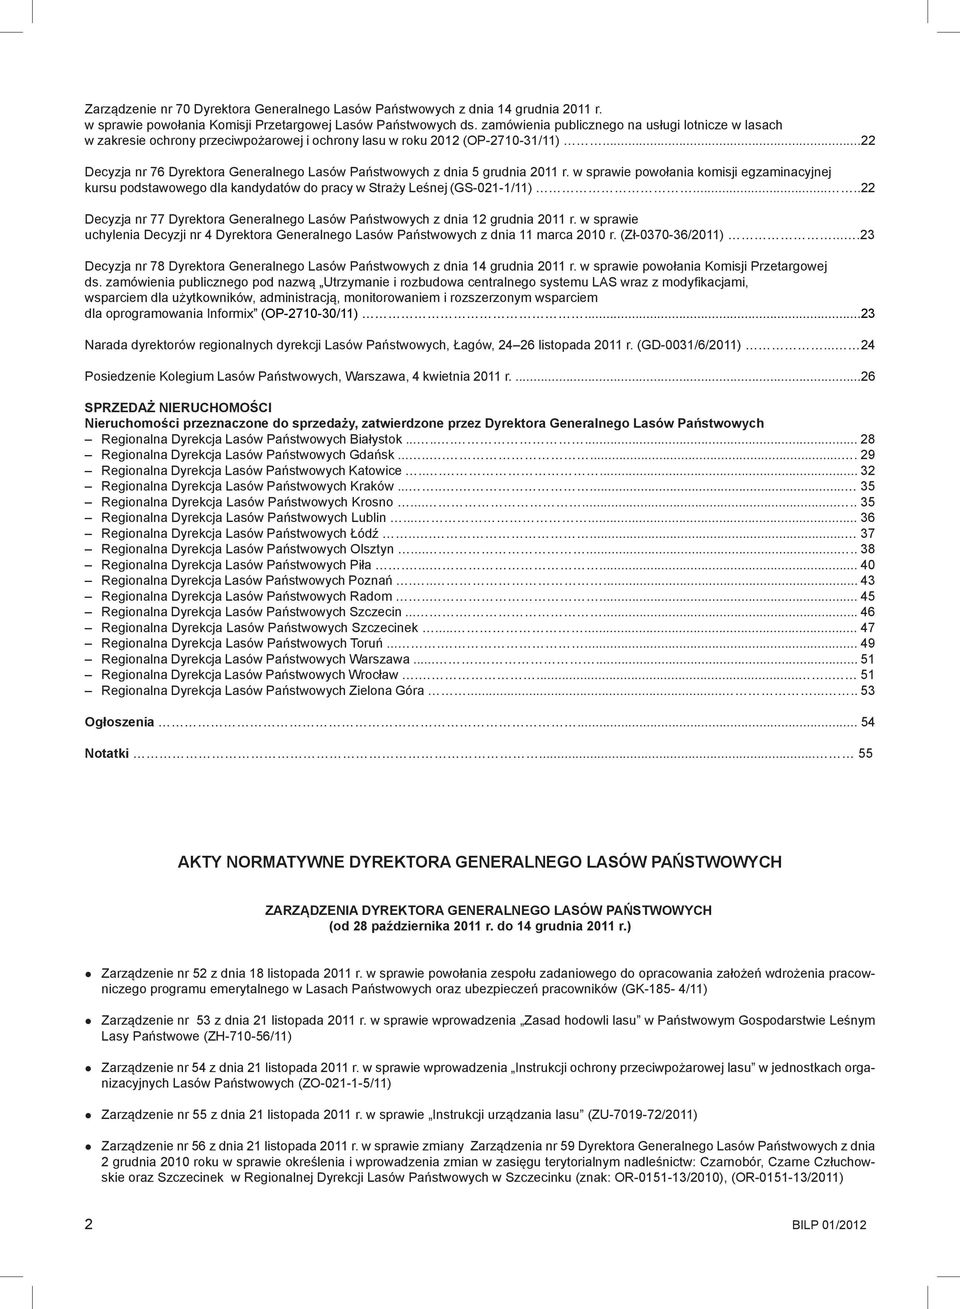 ..22 Decyzja nr 76 Dyrektora Generalnego Lasów Państwowych z dnia 5 grudnia 2011 r. w sprawie powołania komisji egzaminacyjnej kursu podstawowego dla kandydatów do pracy w Straży Leśnej (GS-021-1/11).